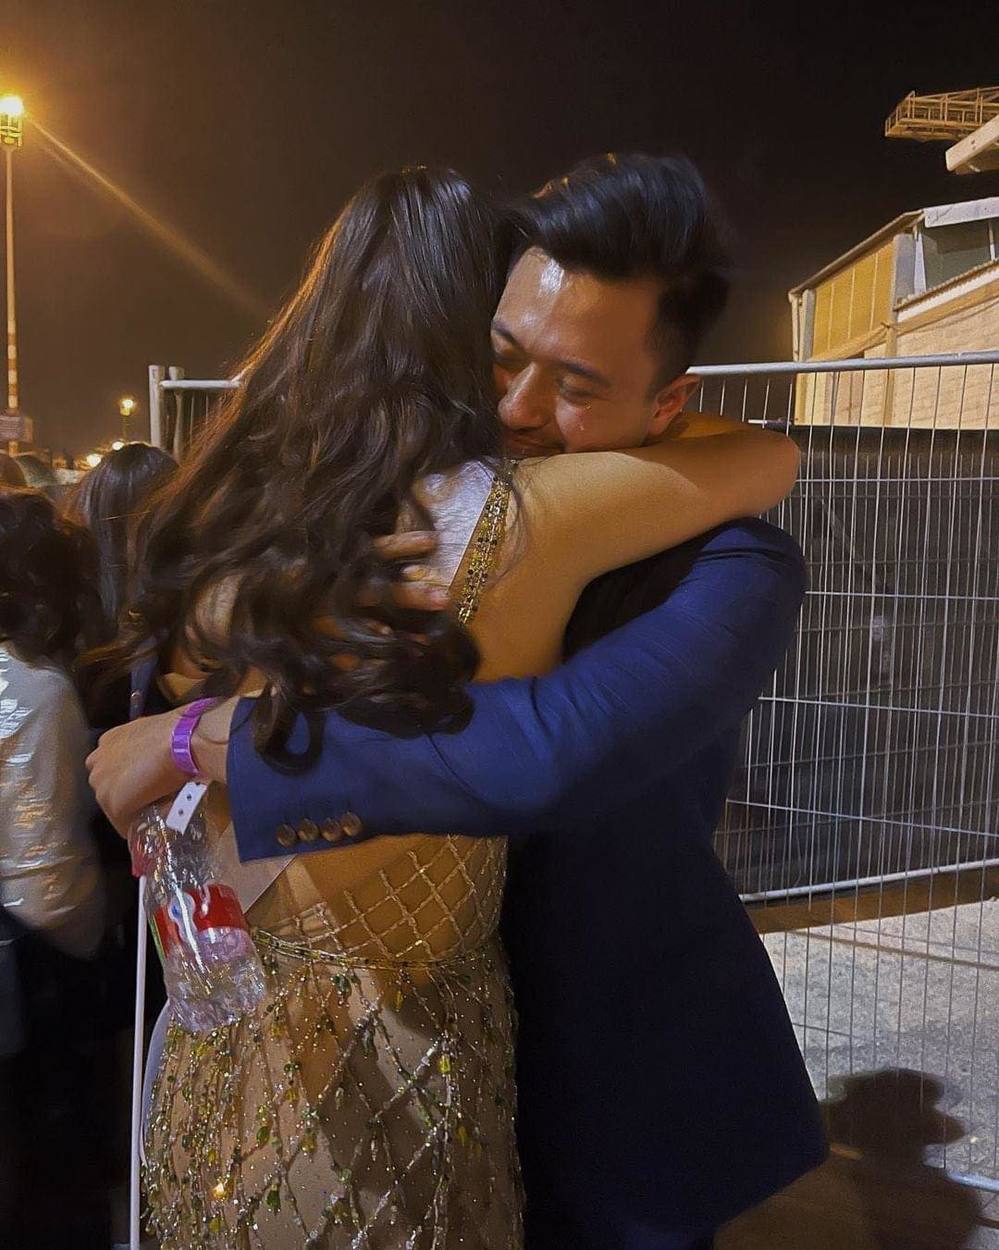  
Hoa hậu Thái Lan cùng em trai ôm nhau khóc nức nở ngay tại sân khấu. - Tin sao Viet - Tin tuc sao Viet - Scandal sao Viet - Tin tuc cua Sao - Tin cua Sao